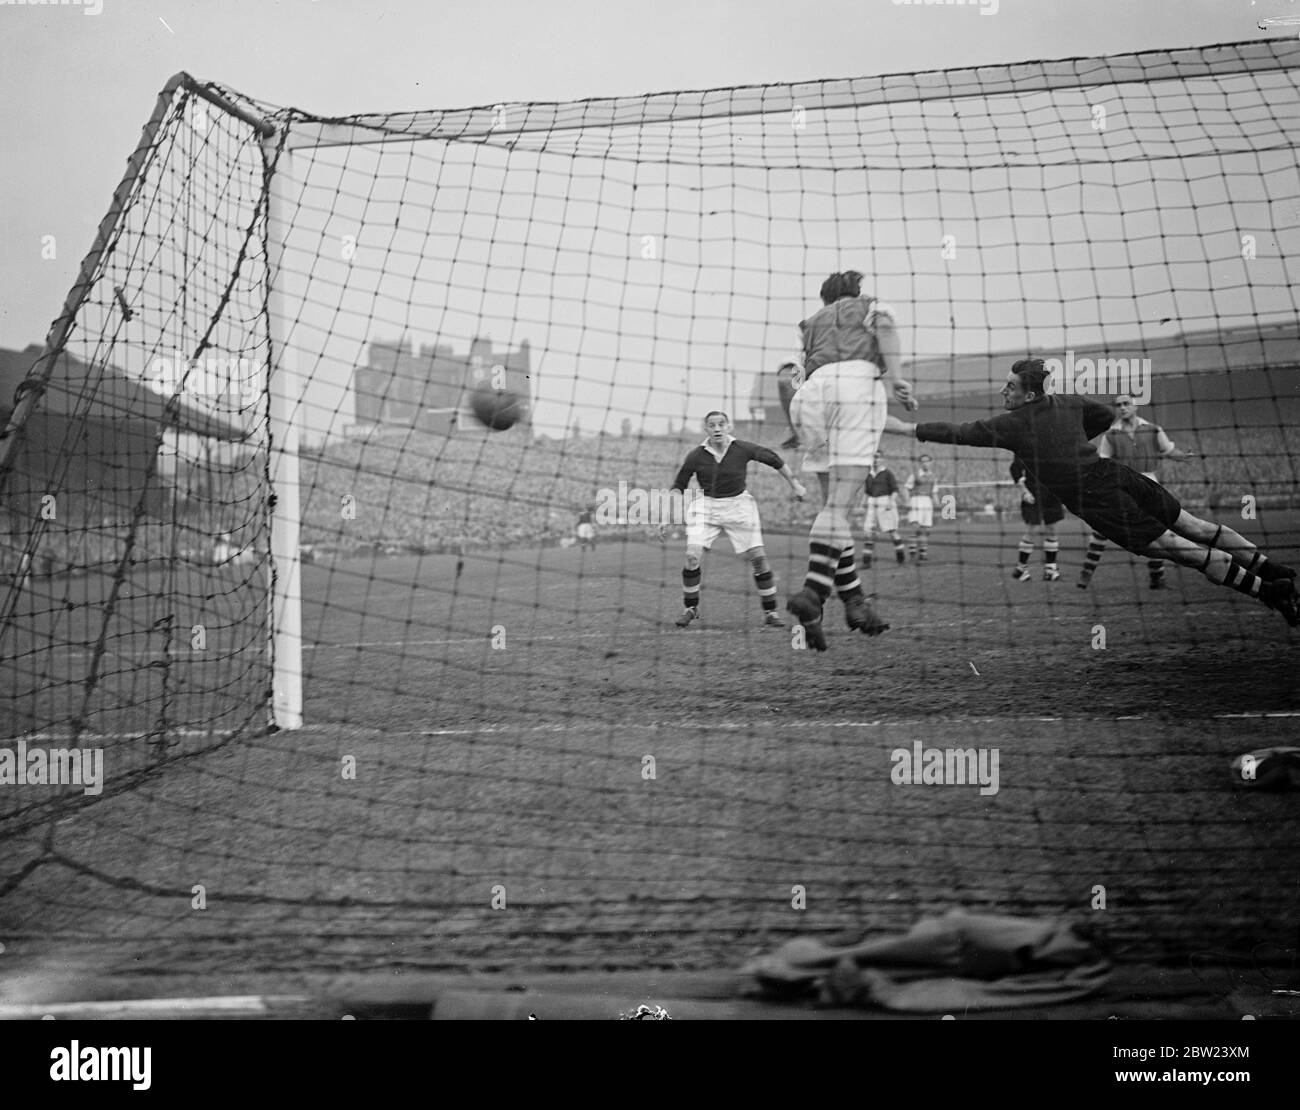 Chelsea traf Arsenal in der ersten Division London darby an der Stamford Bridge. Foto zeigt: Swindin, der Arsenal-Torhüter, schleudert sich über das Tor, um Chelseas zweites Tor zu retten, das Hanson erzielte. 15. Oktober 1938 Stockfoto